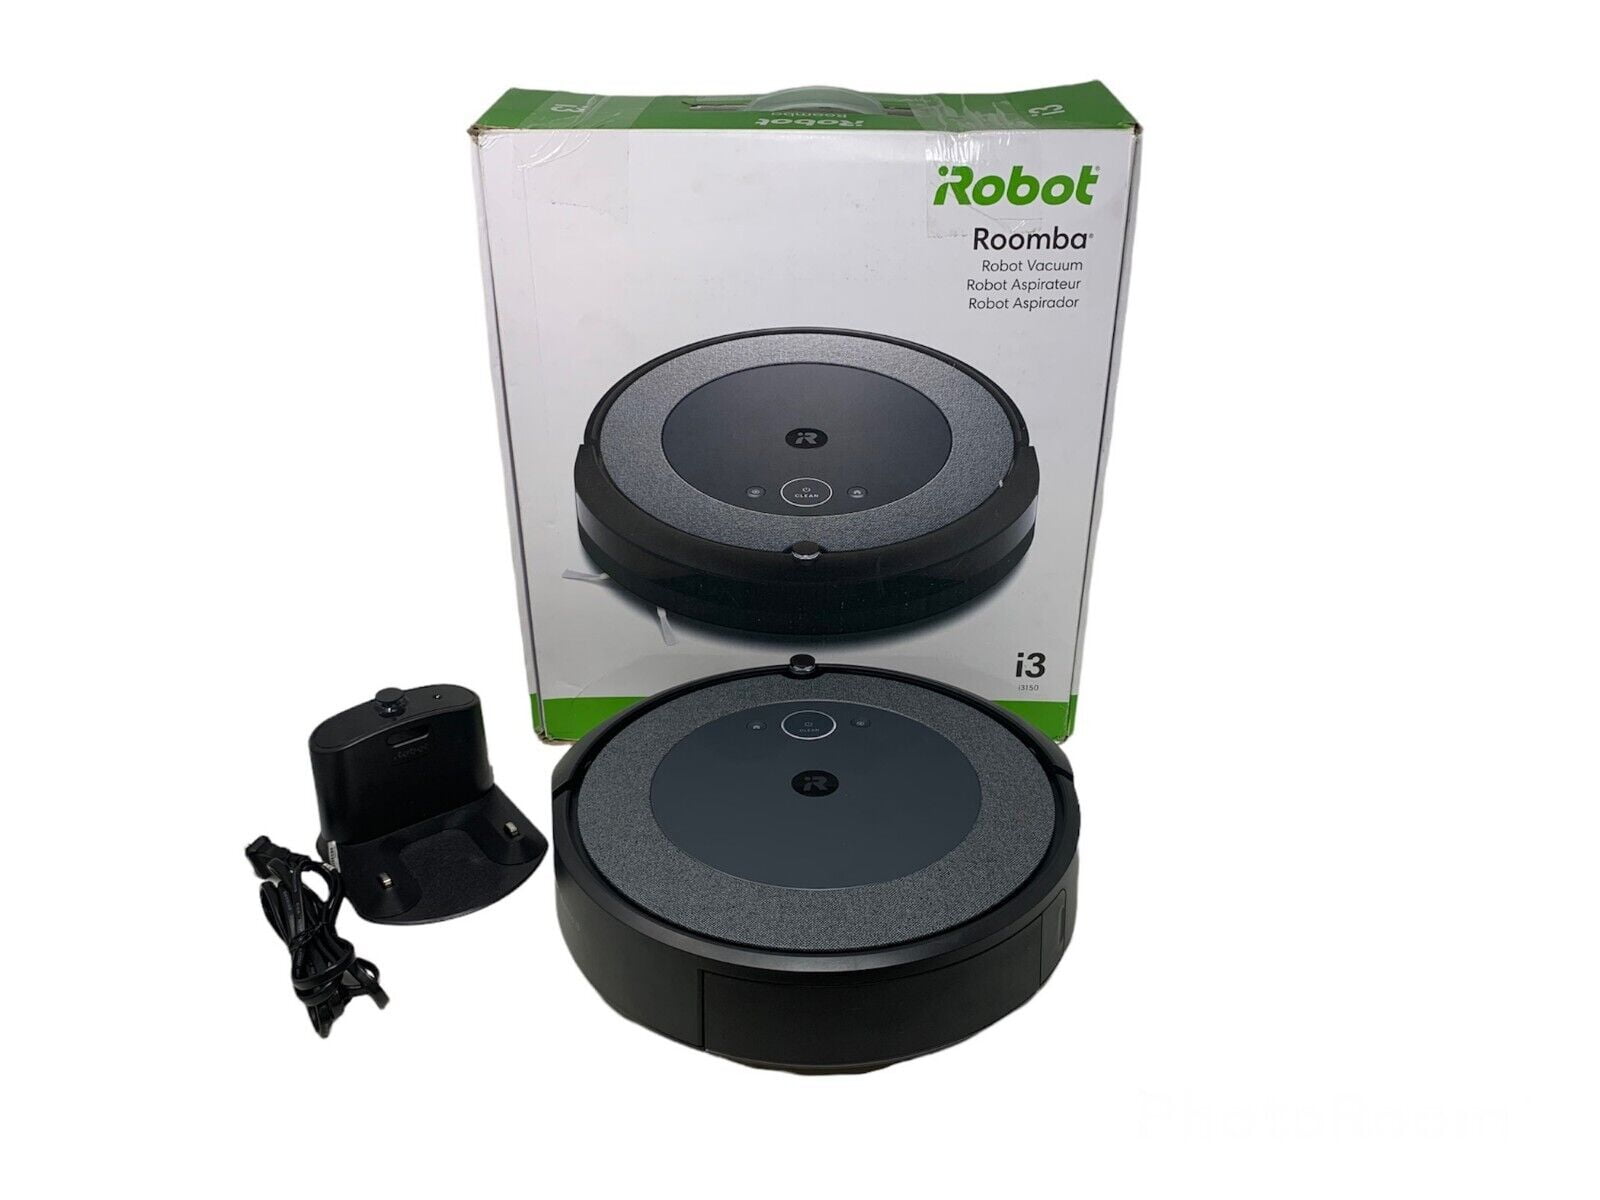 Kastar 1-Pack Battery 3500mAh for iRobot Roomba 500 510 530 531